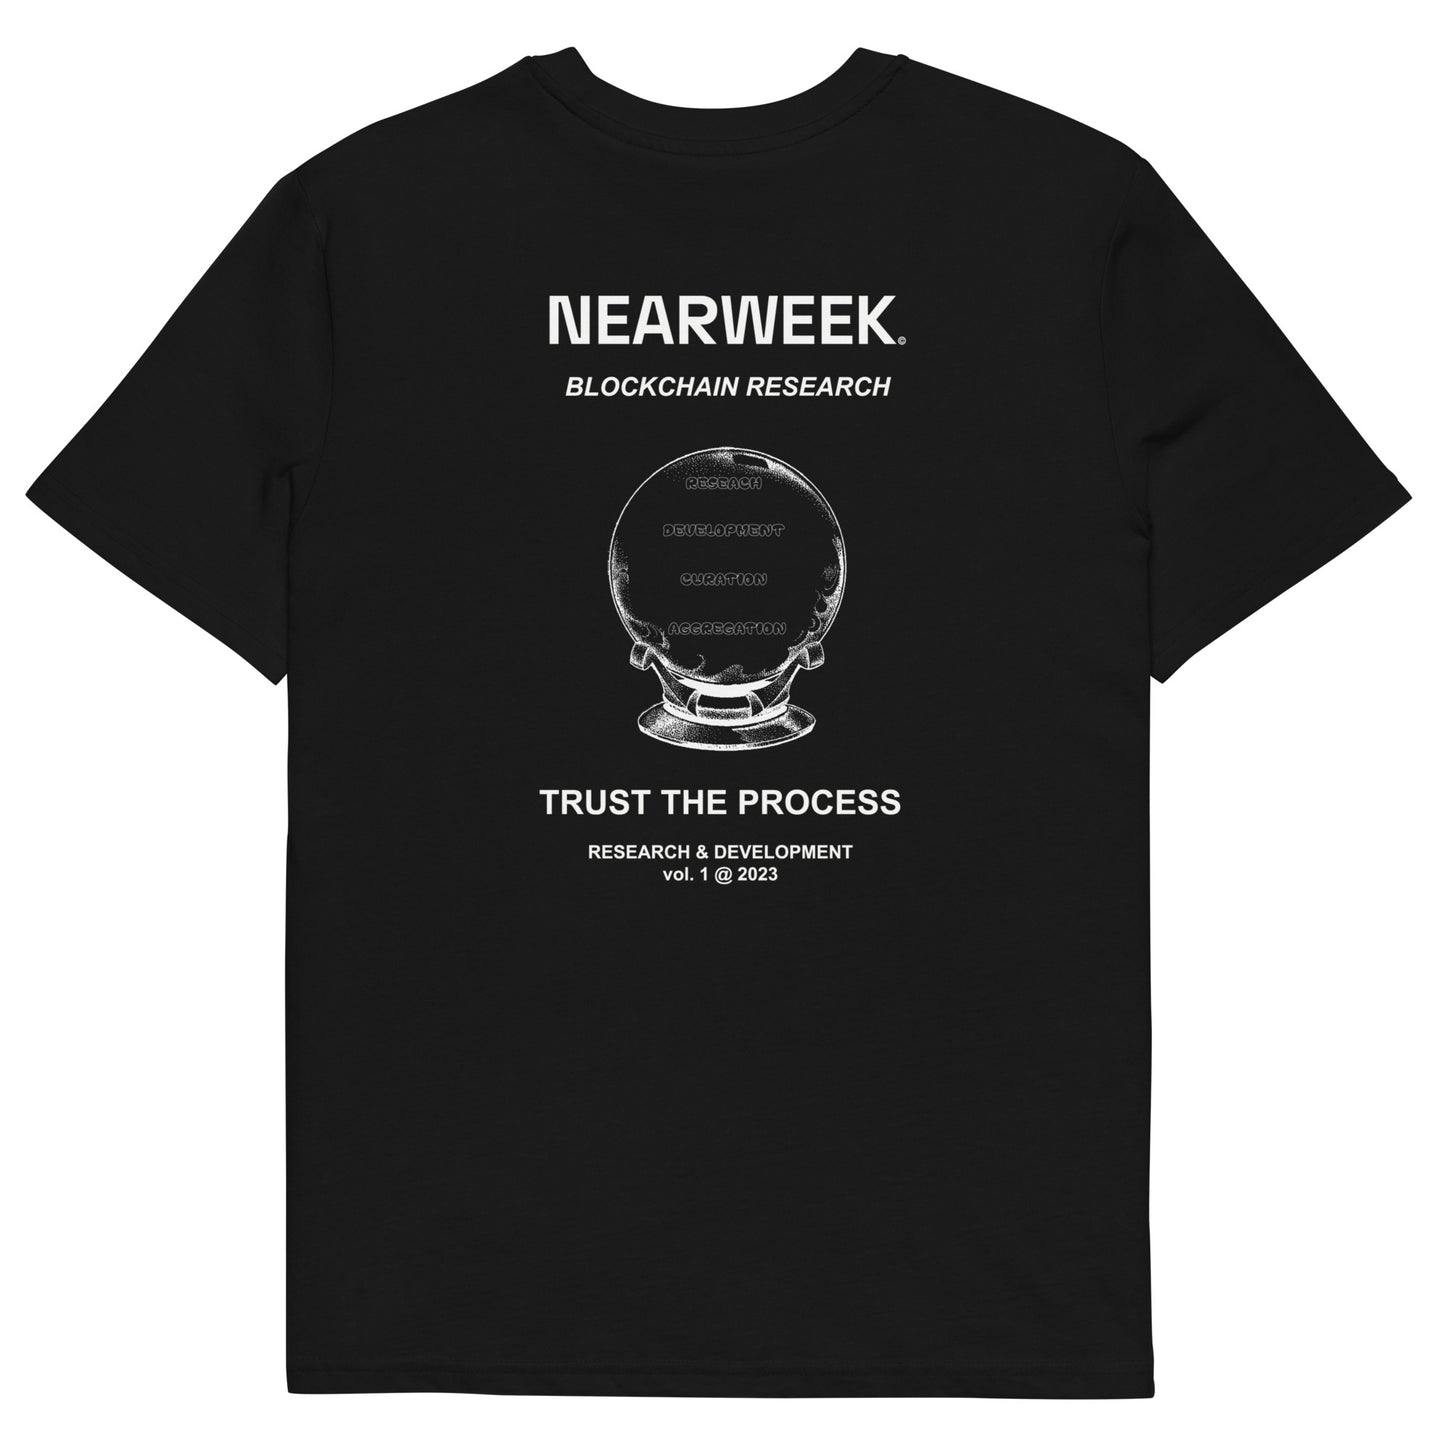 NEARWEEK 'Trust the Process' Short Sleeve Shirt